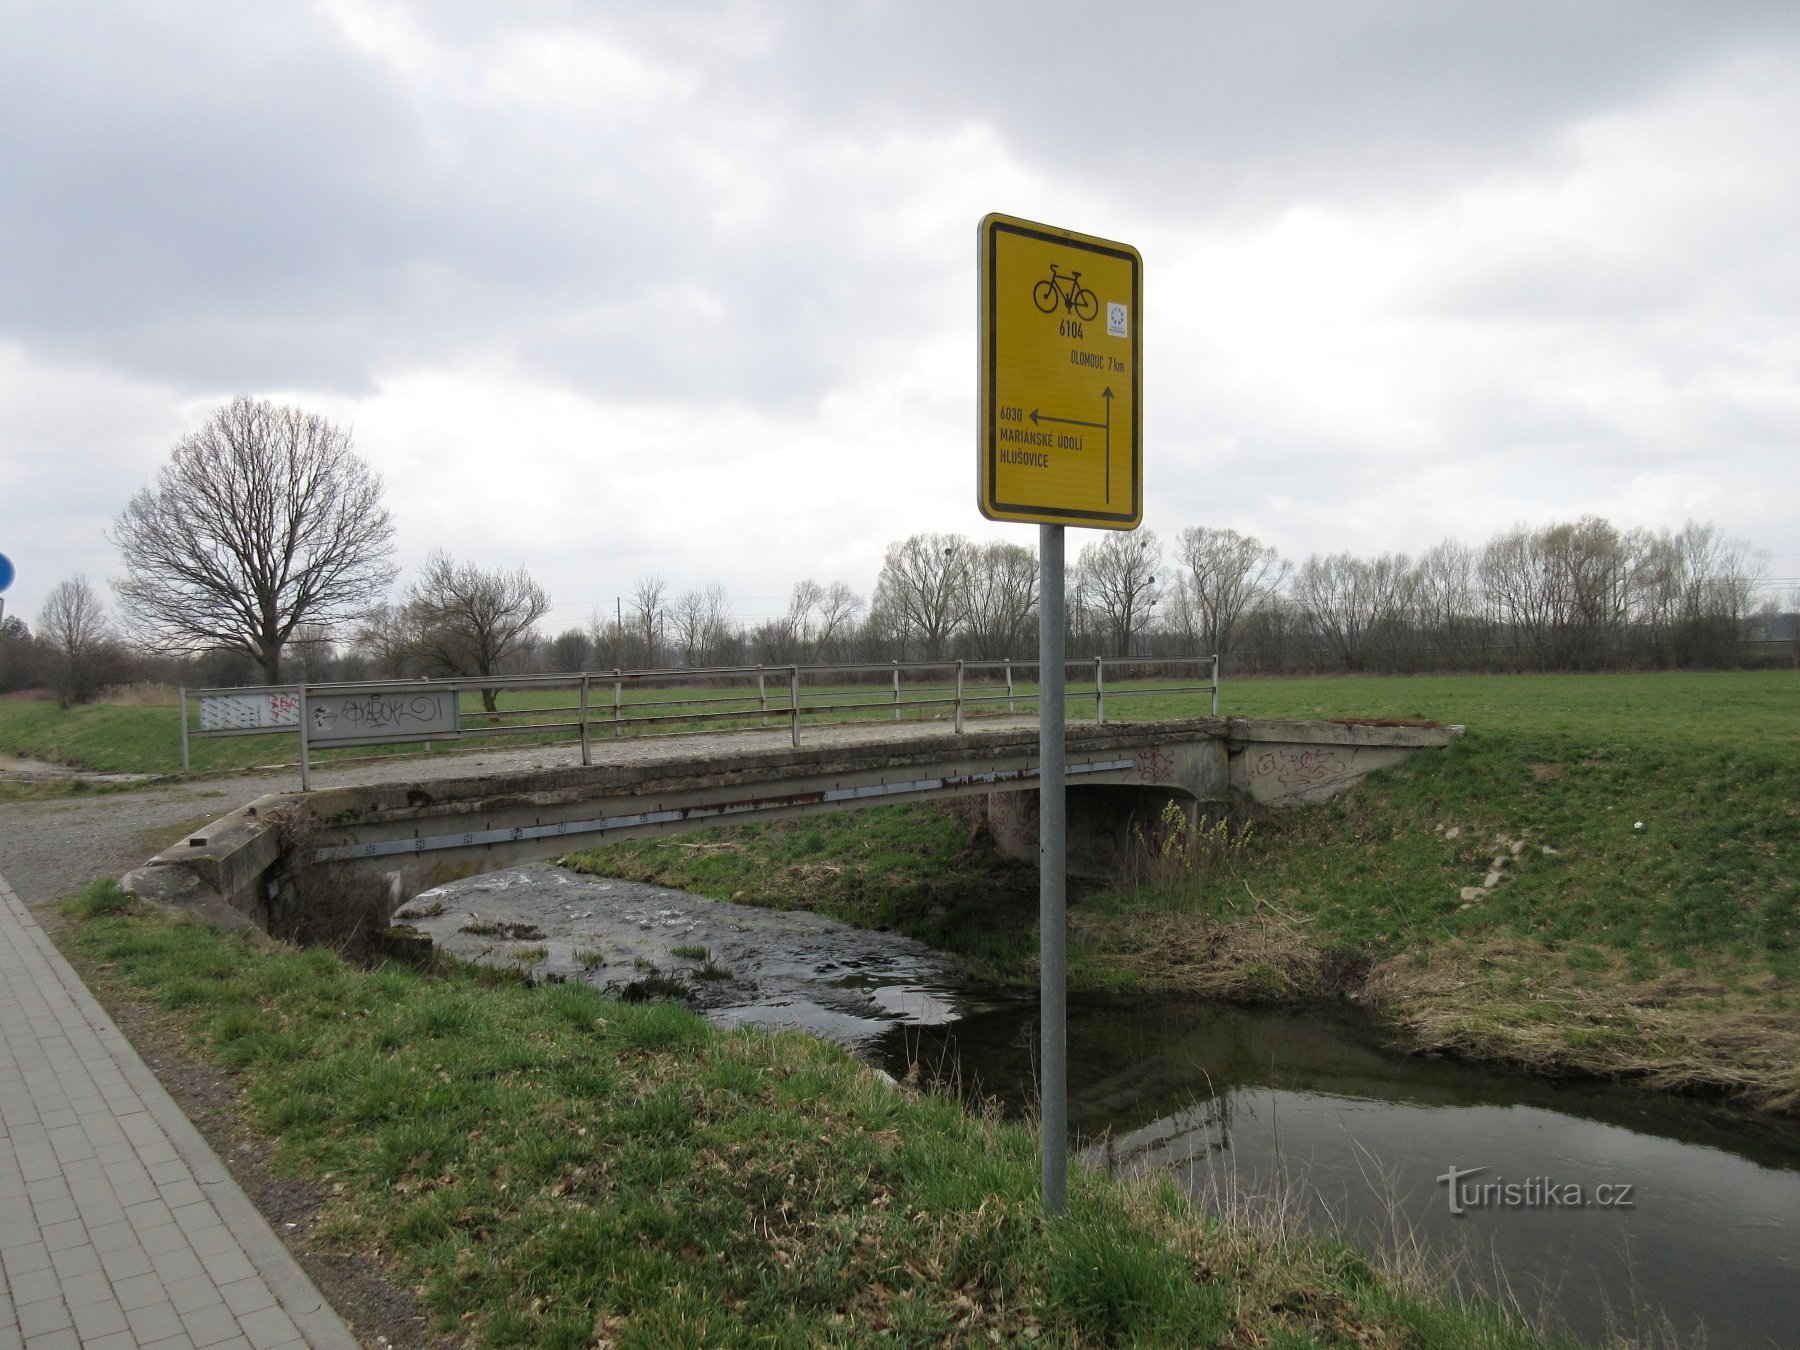 Trusovický potok - unsere erste Brücke